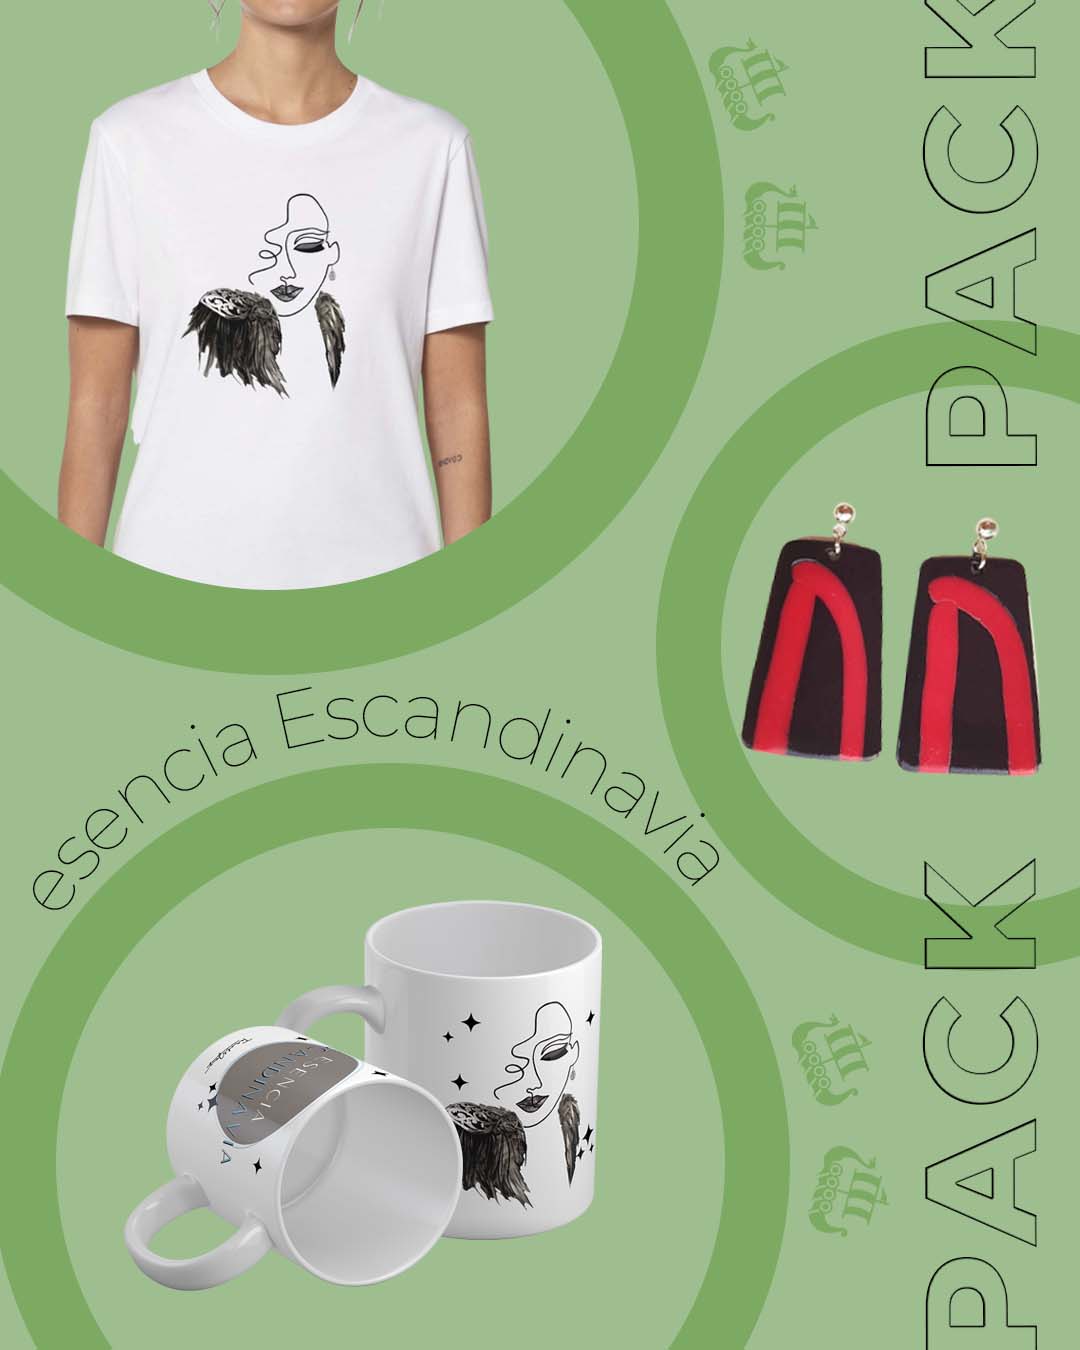 Oferta pack esencia Escandinavia. Camisetas personalizadas para mujer con pendientes y tazas personalizadas